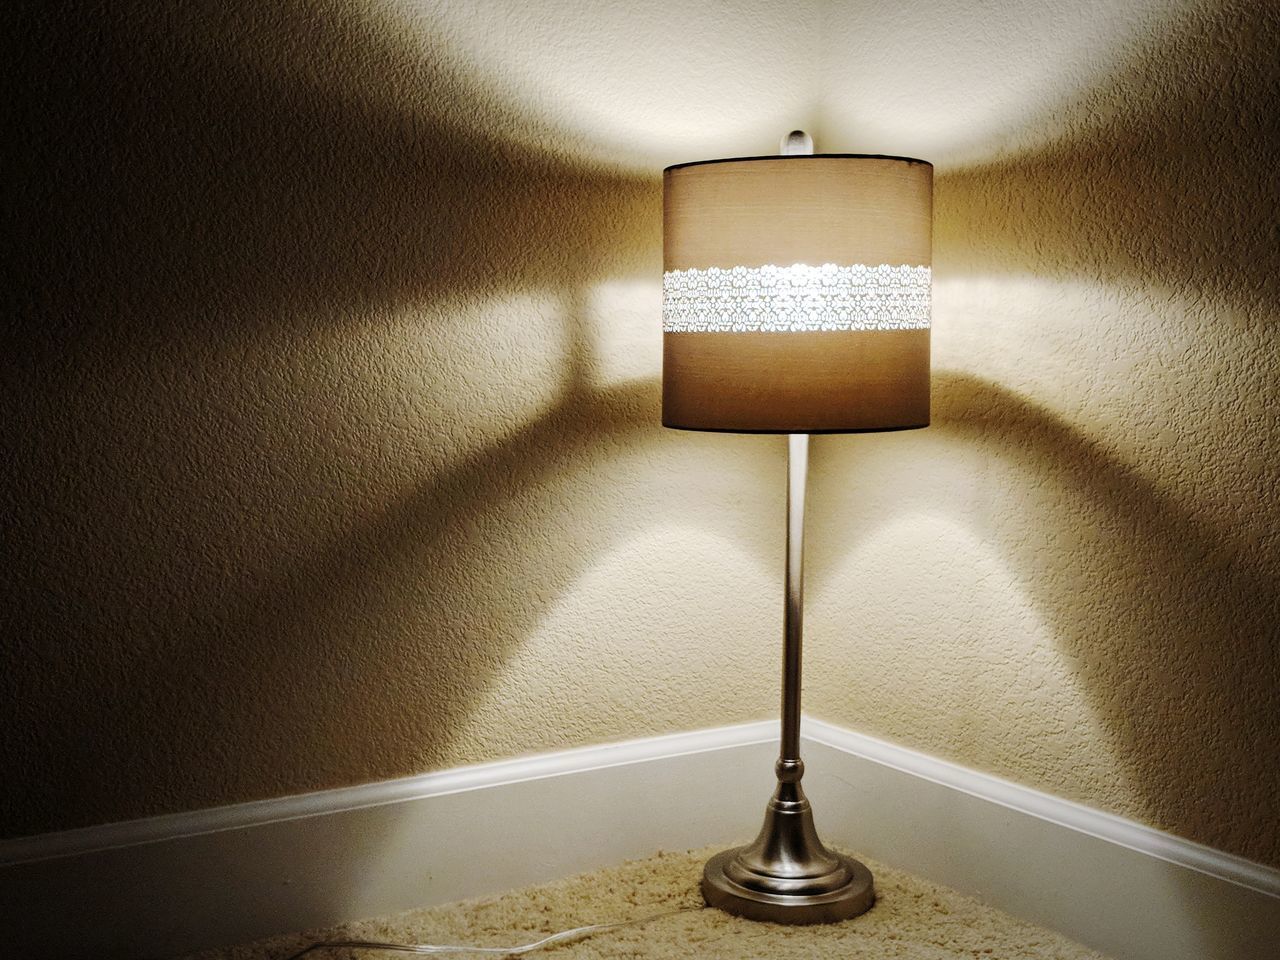 CLOSE-UP OF ILLUMINATED LAMP AT HOME